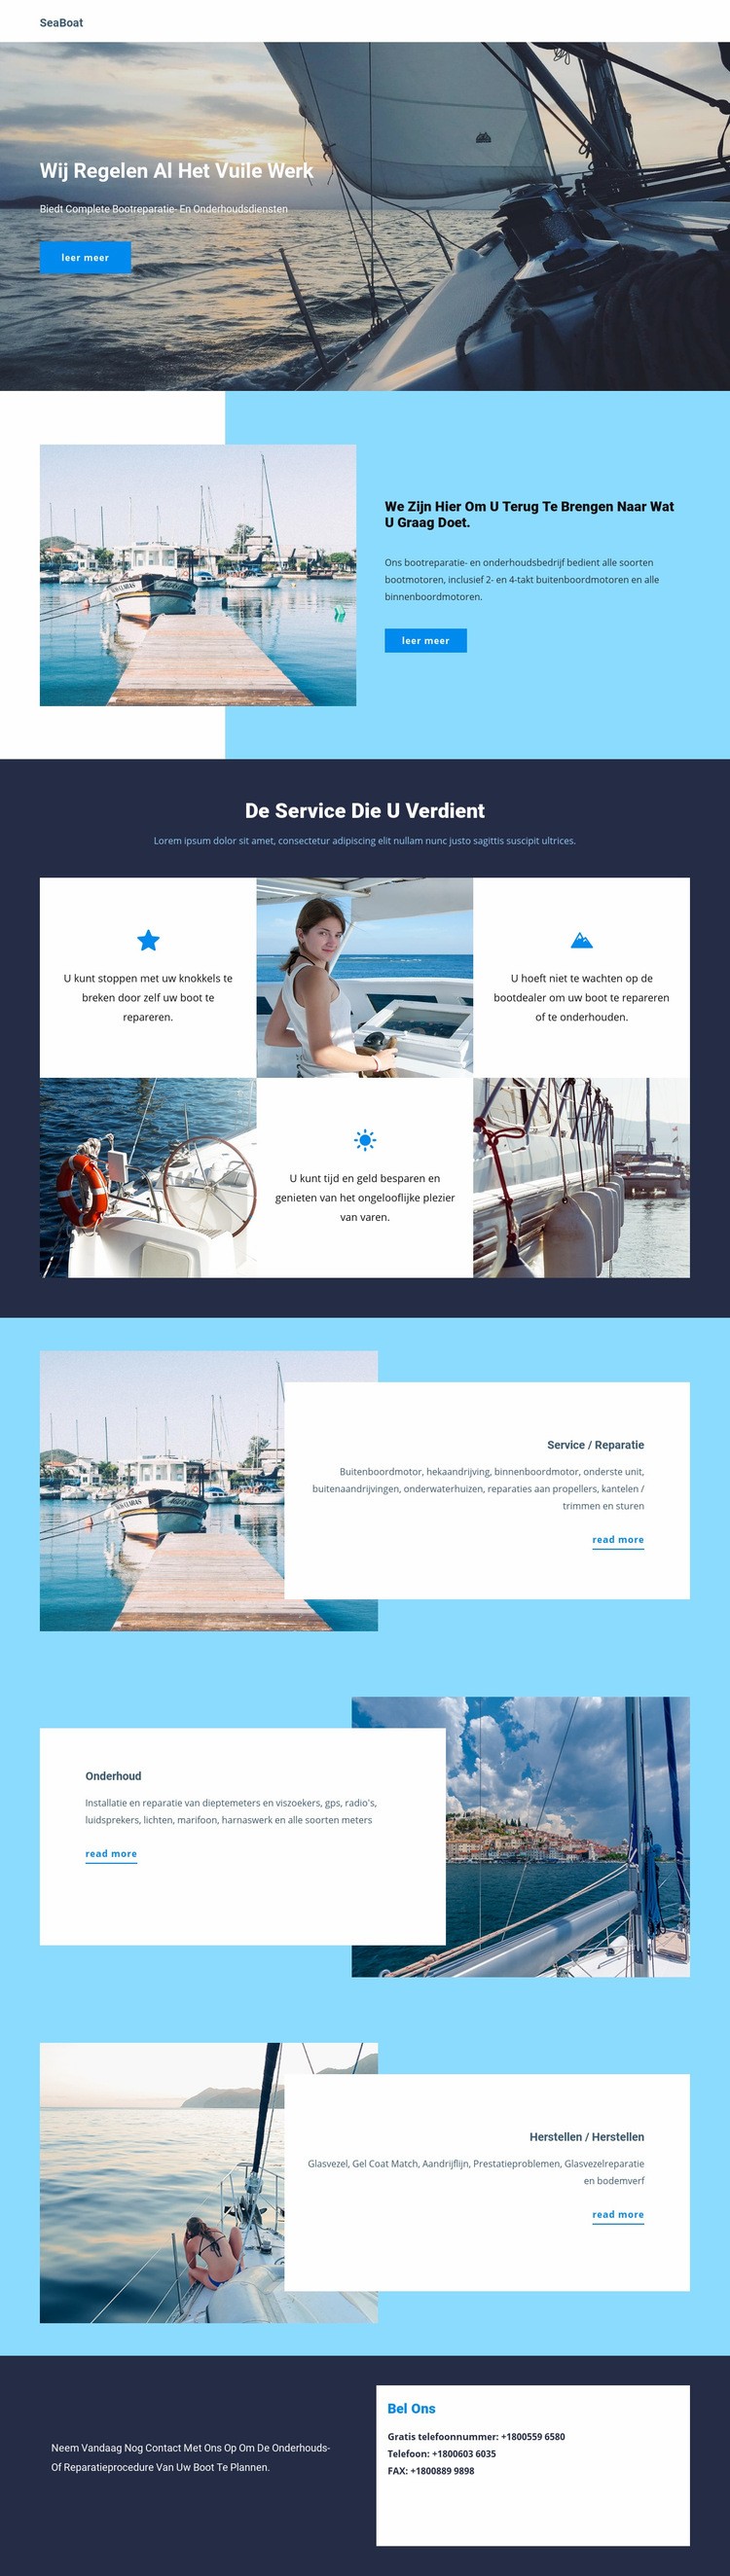 Reis op Seaboat HTML5-sjabloon